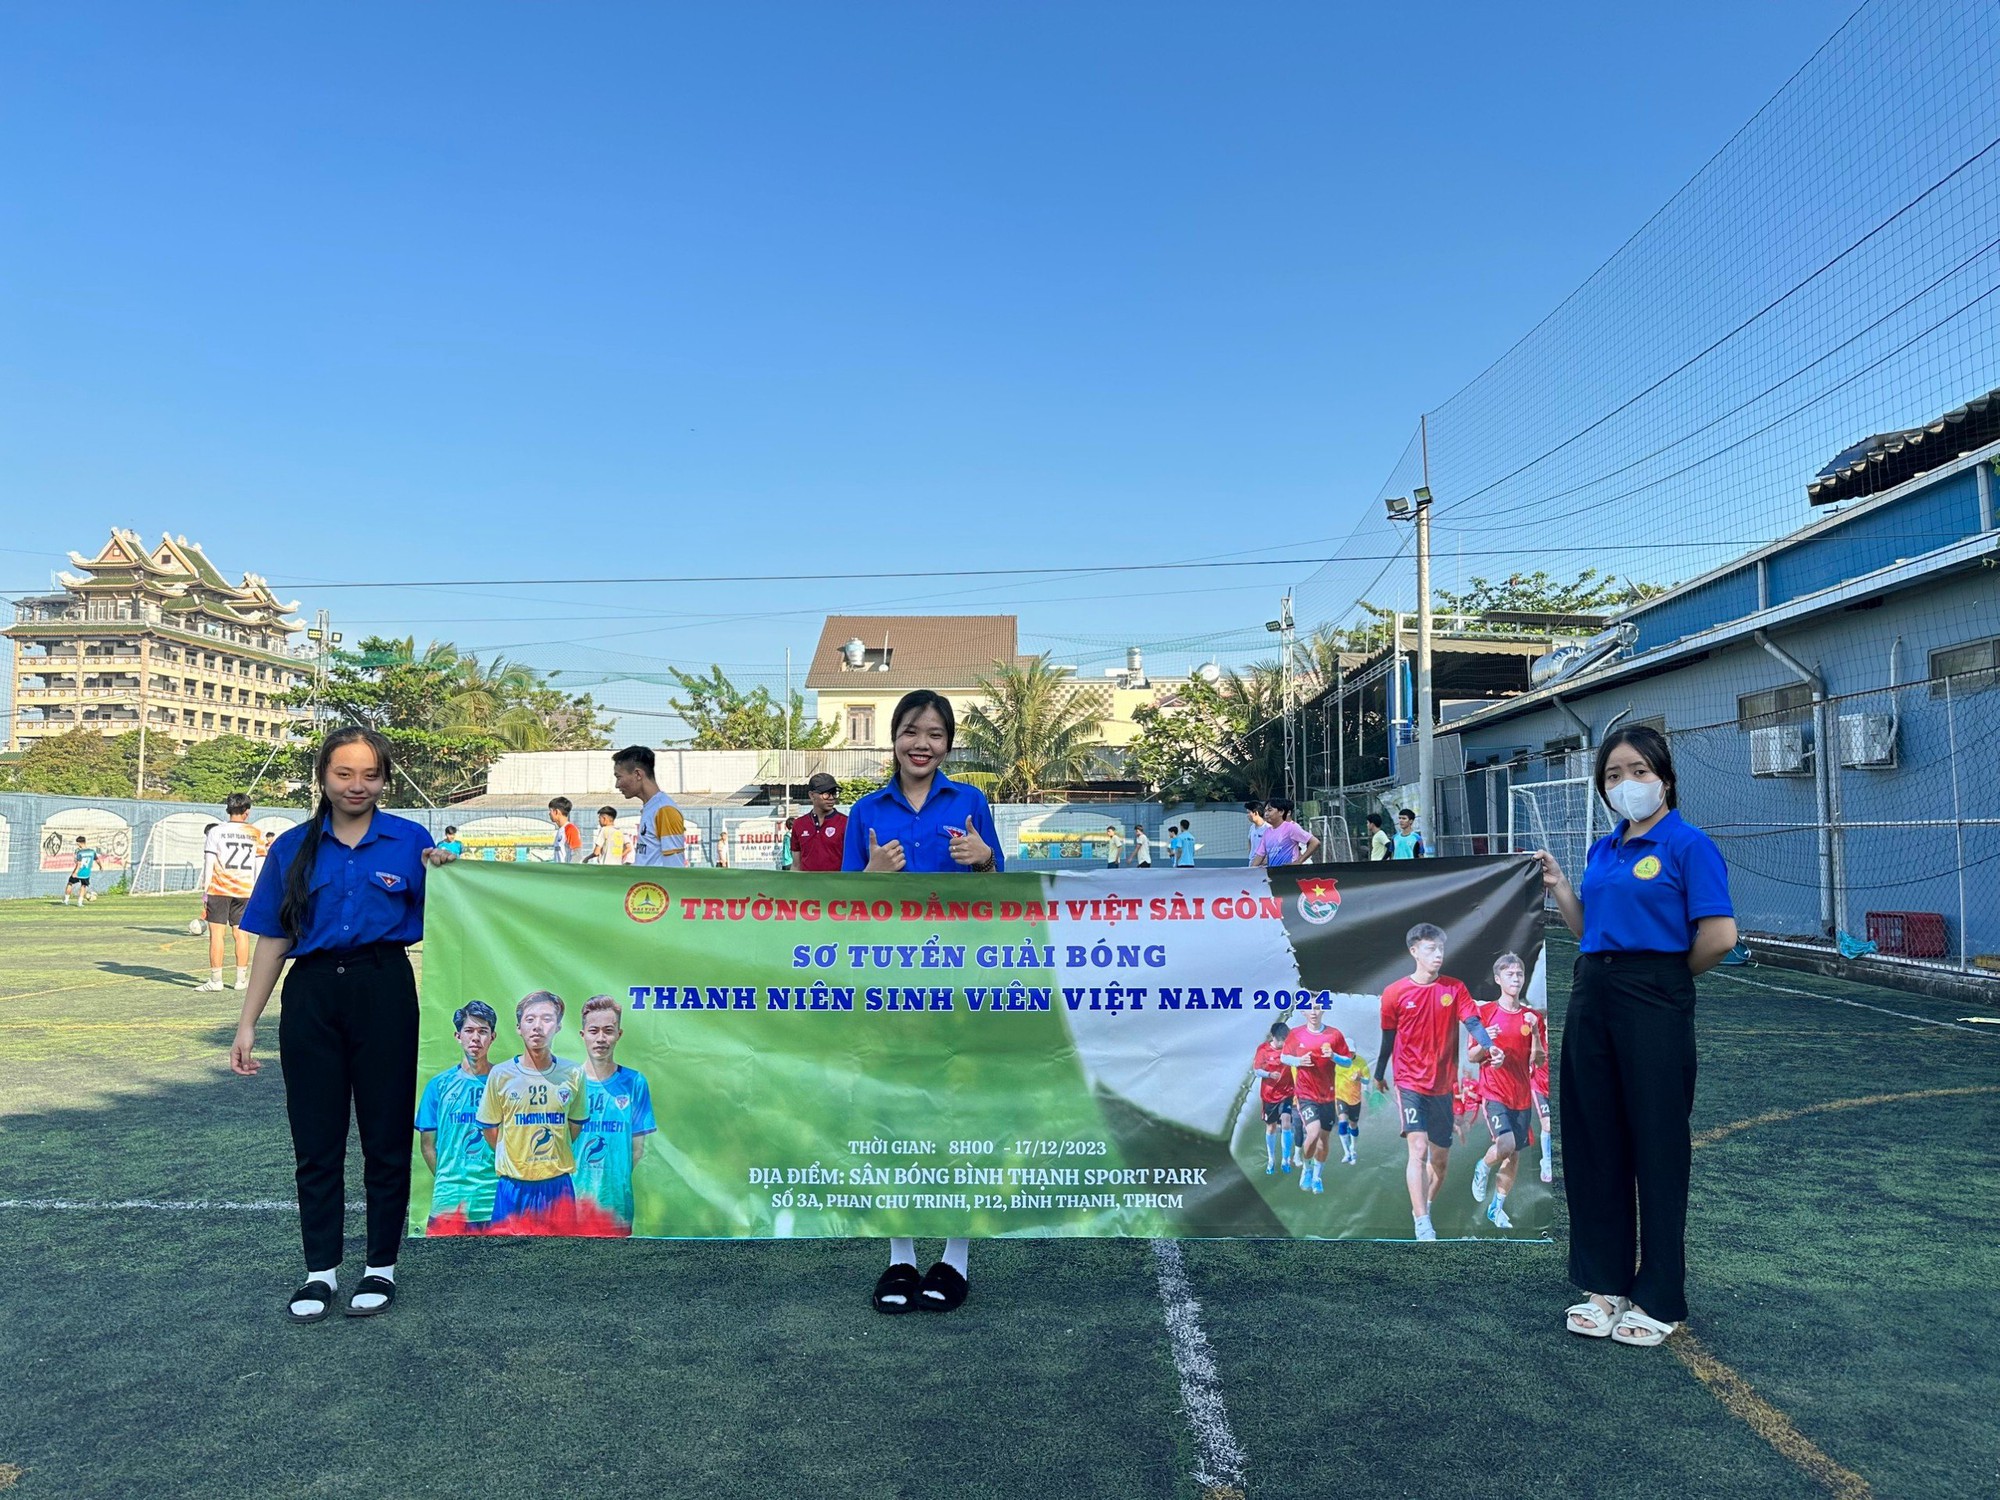 Sức nóng giải đấu sinh viên đến từ trường Cao đẳng Đại Việt Sài Gòn - Ảnh 5.